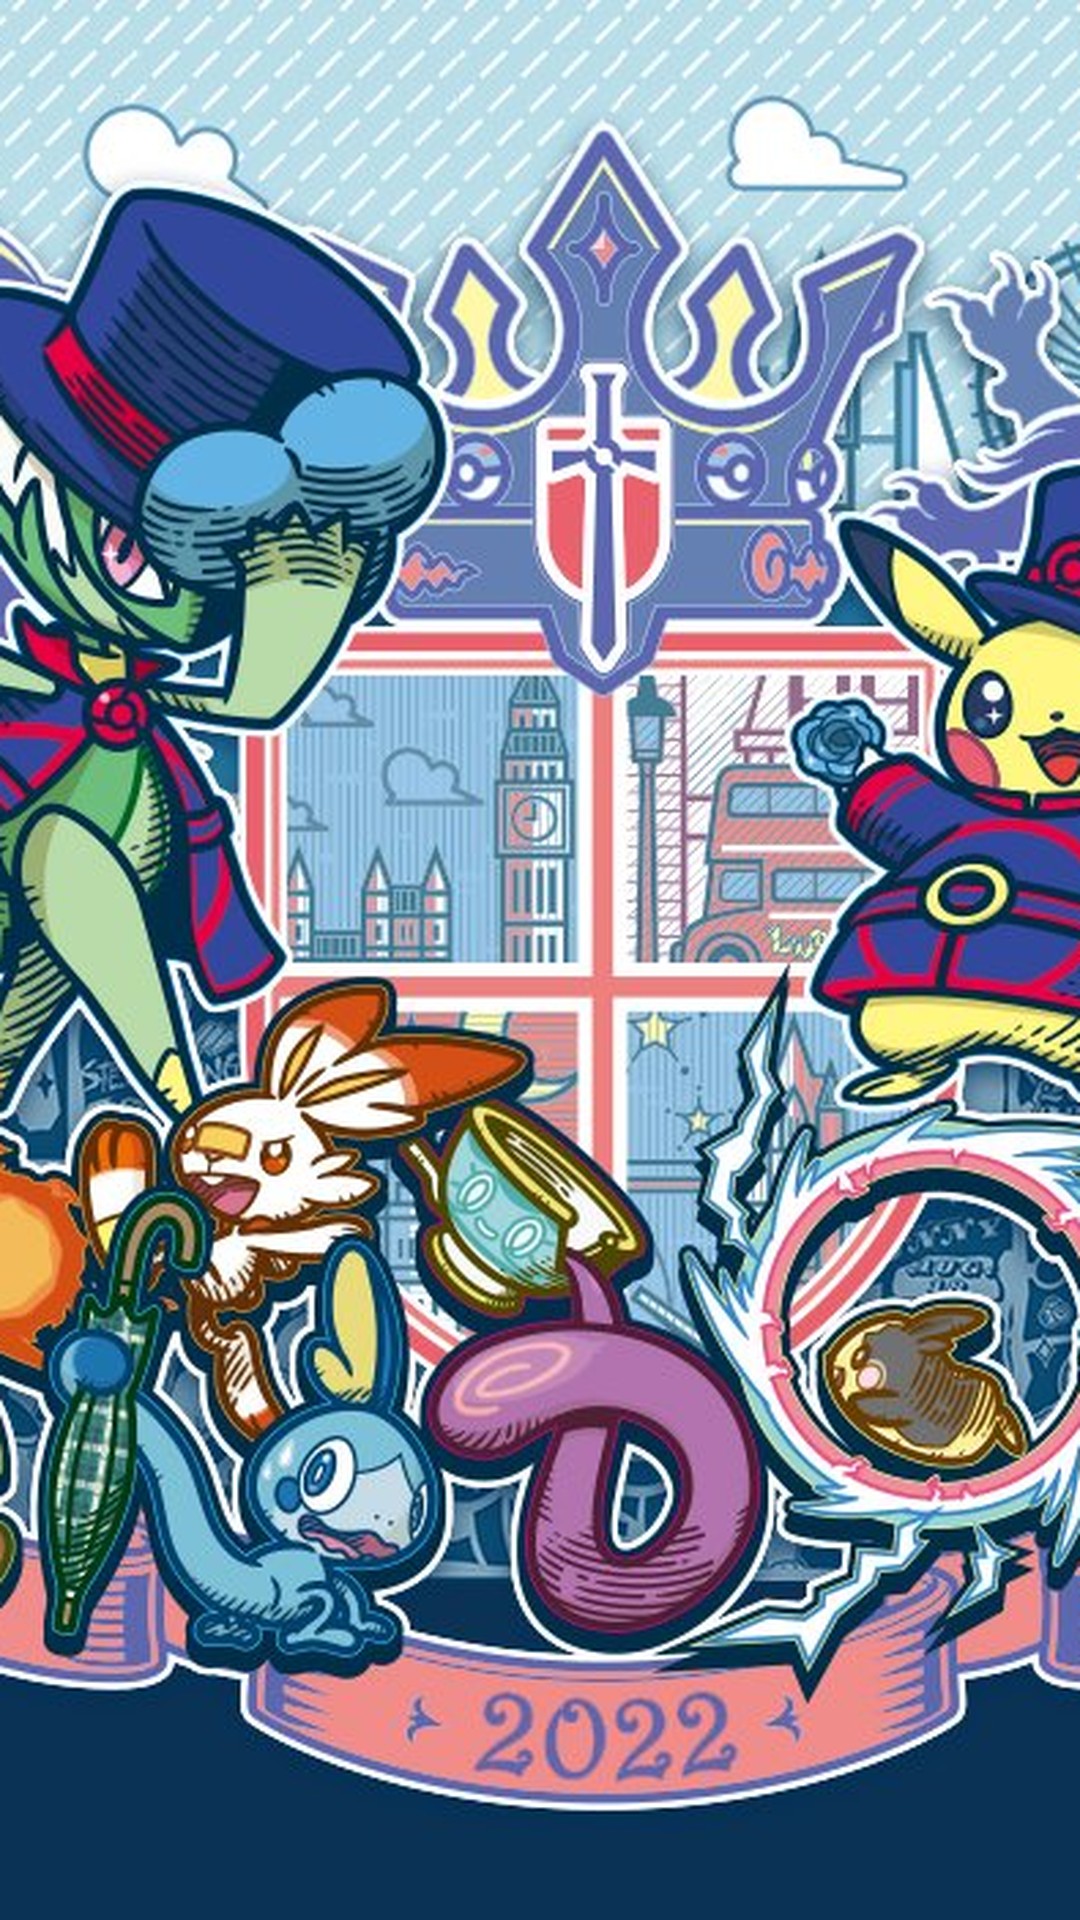 Pokémon UNITE: Xis vai representar o Brasil no mundial - Canaltech